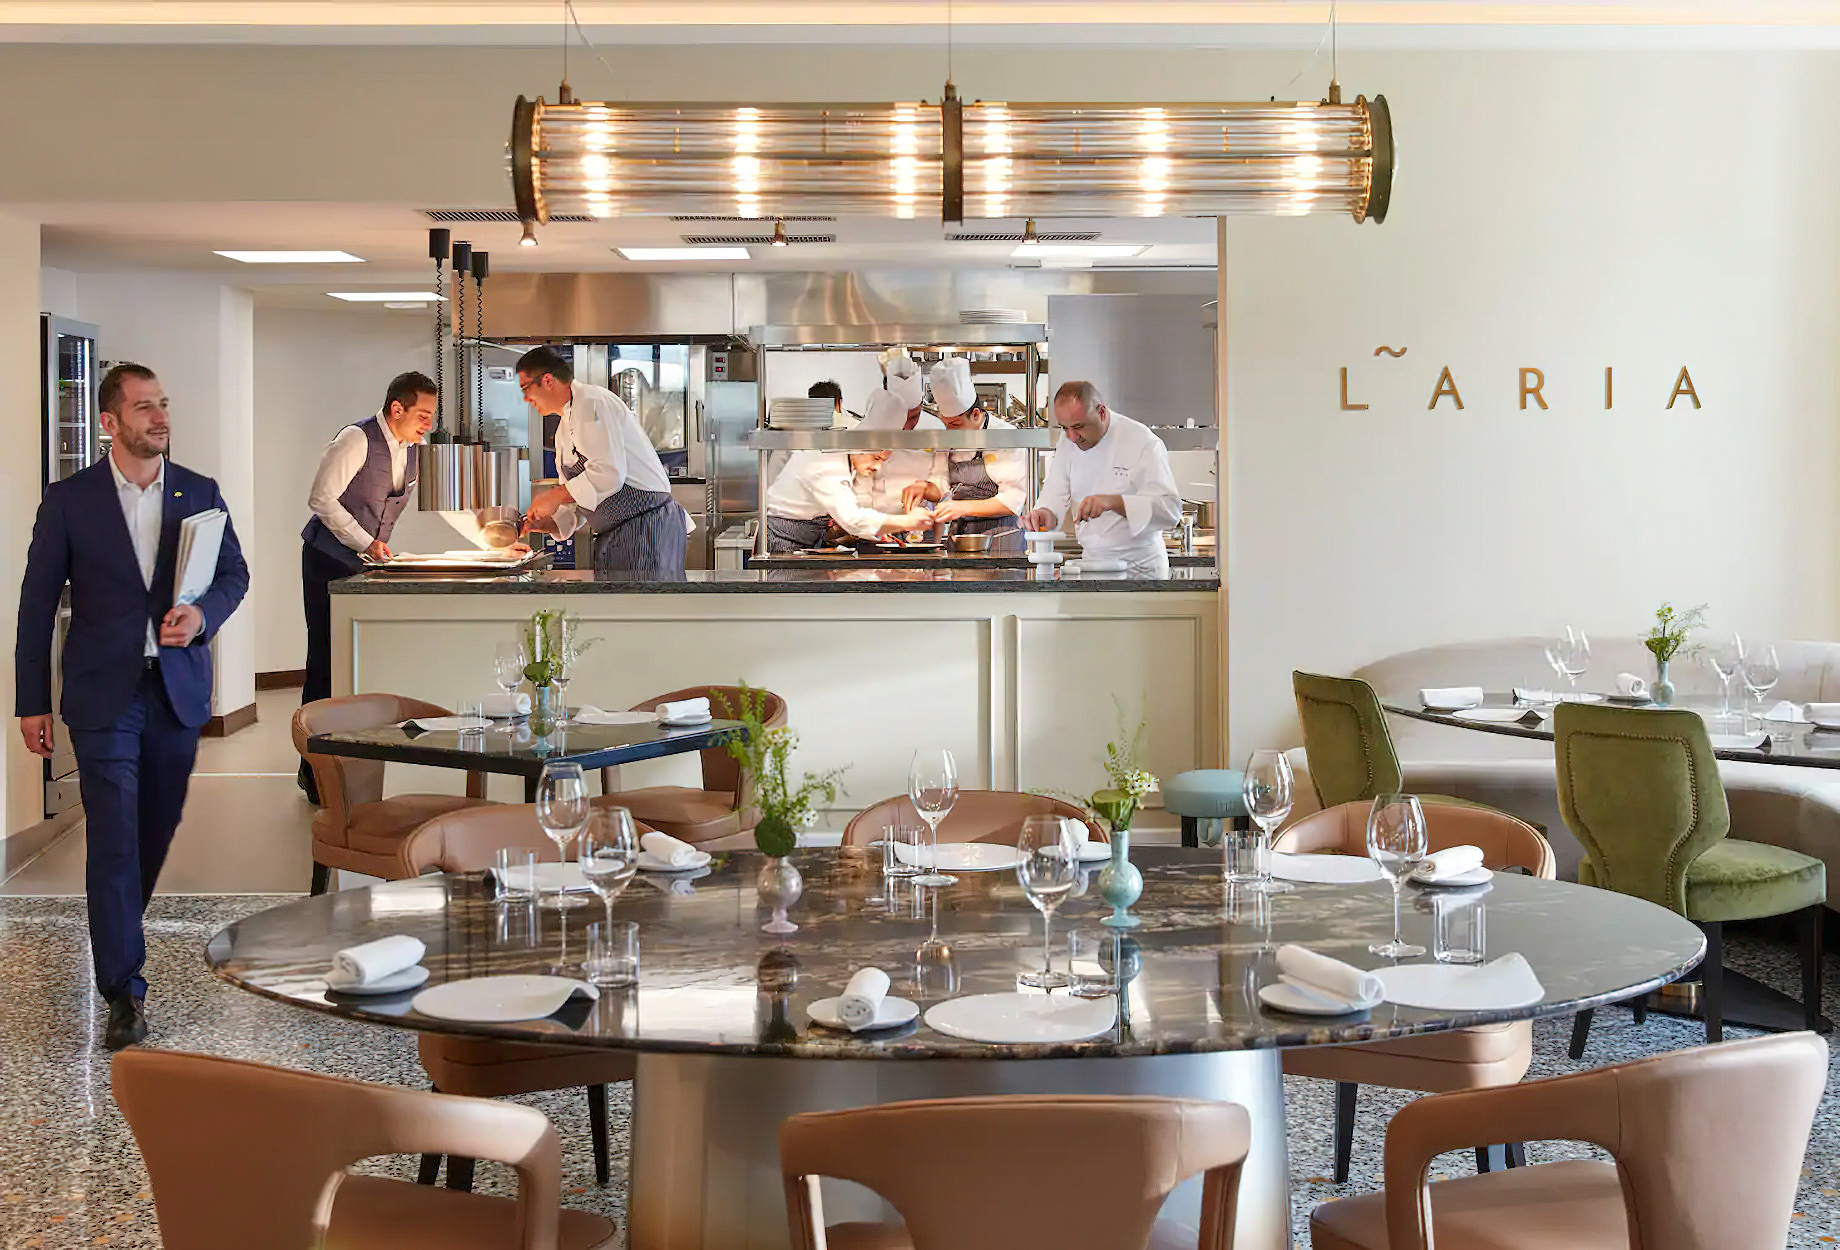 Mandarin Oriental, Lago di Como Hotel – Lake Como, Italy – LARIA Restaurant